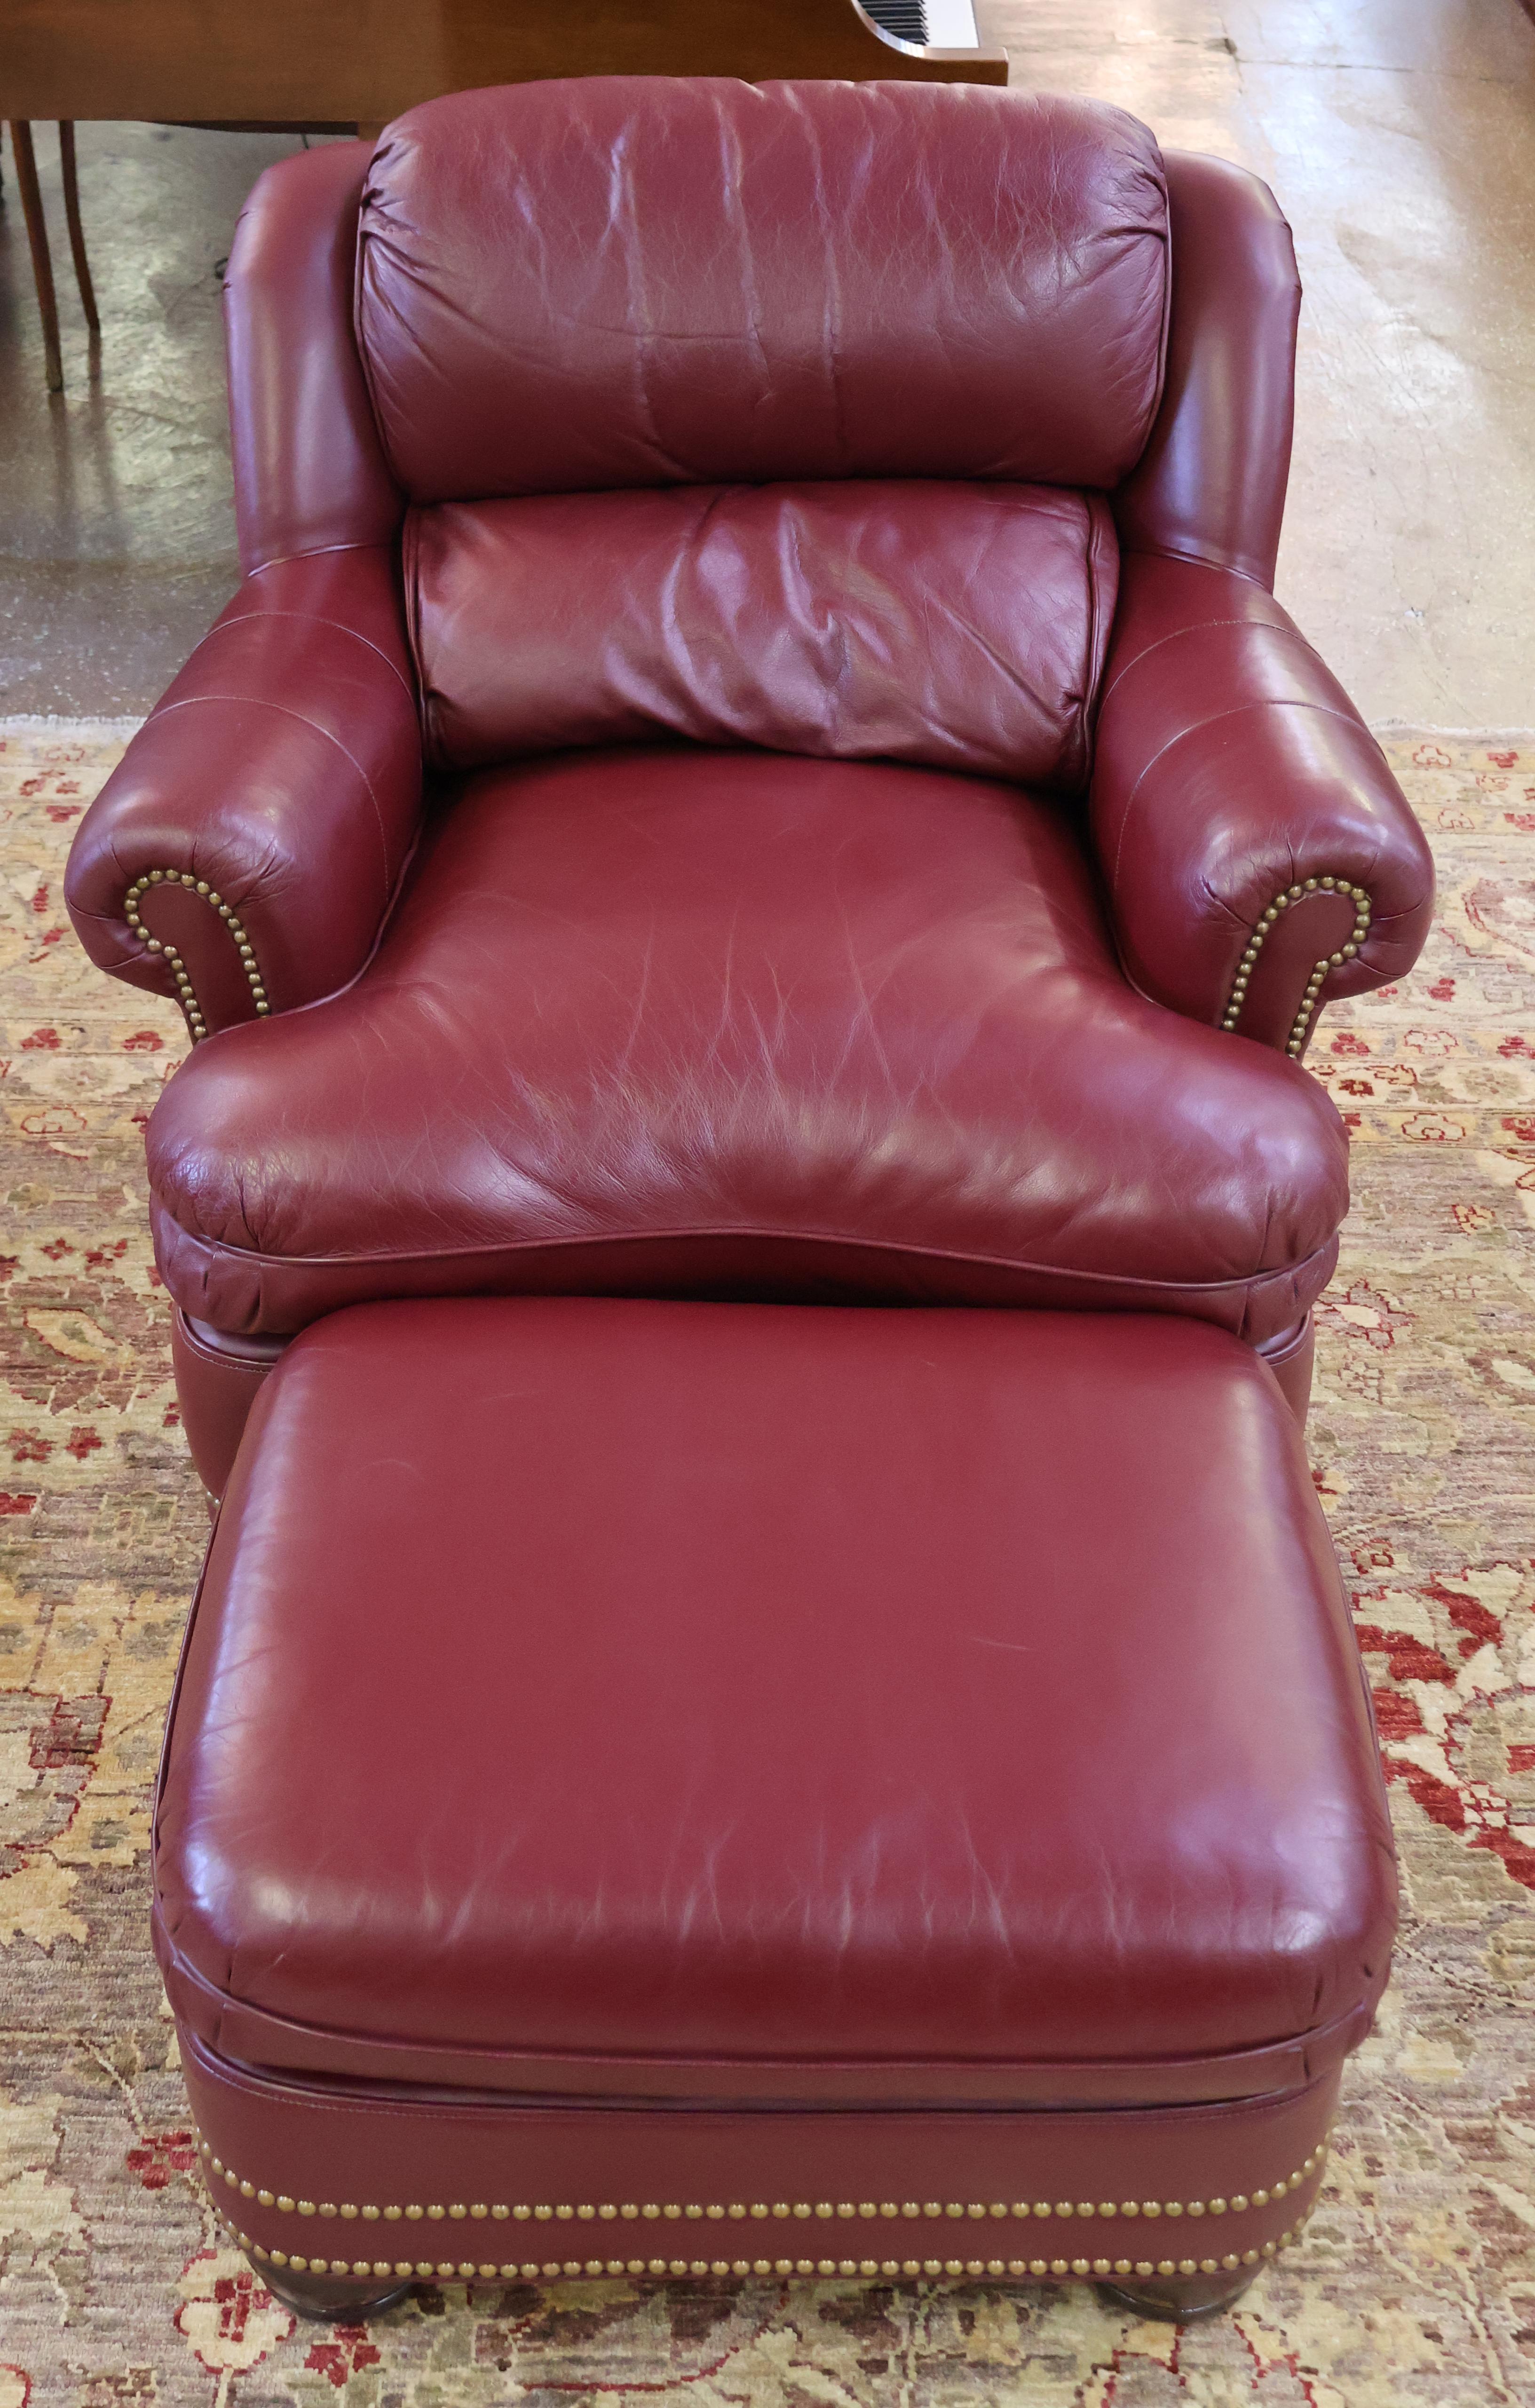 Chaise longue et pouf Austin en cuir bordeaux Hanock and Moore

Dimensions : Chaise - 35